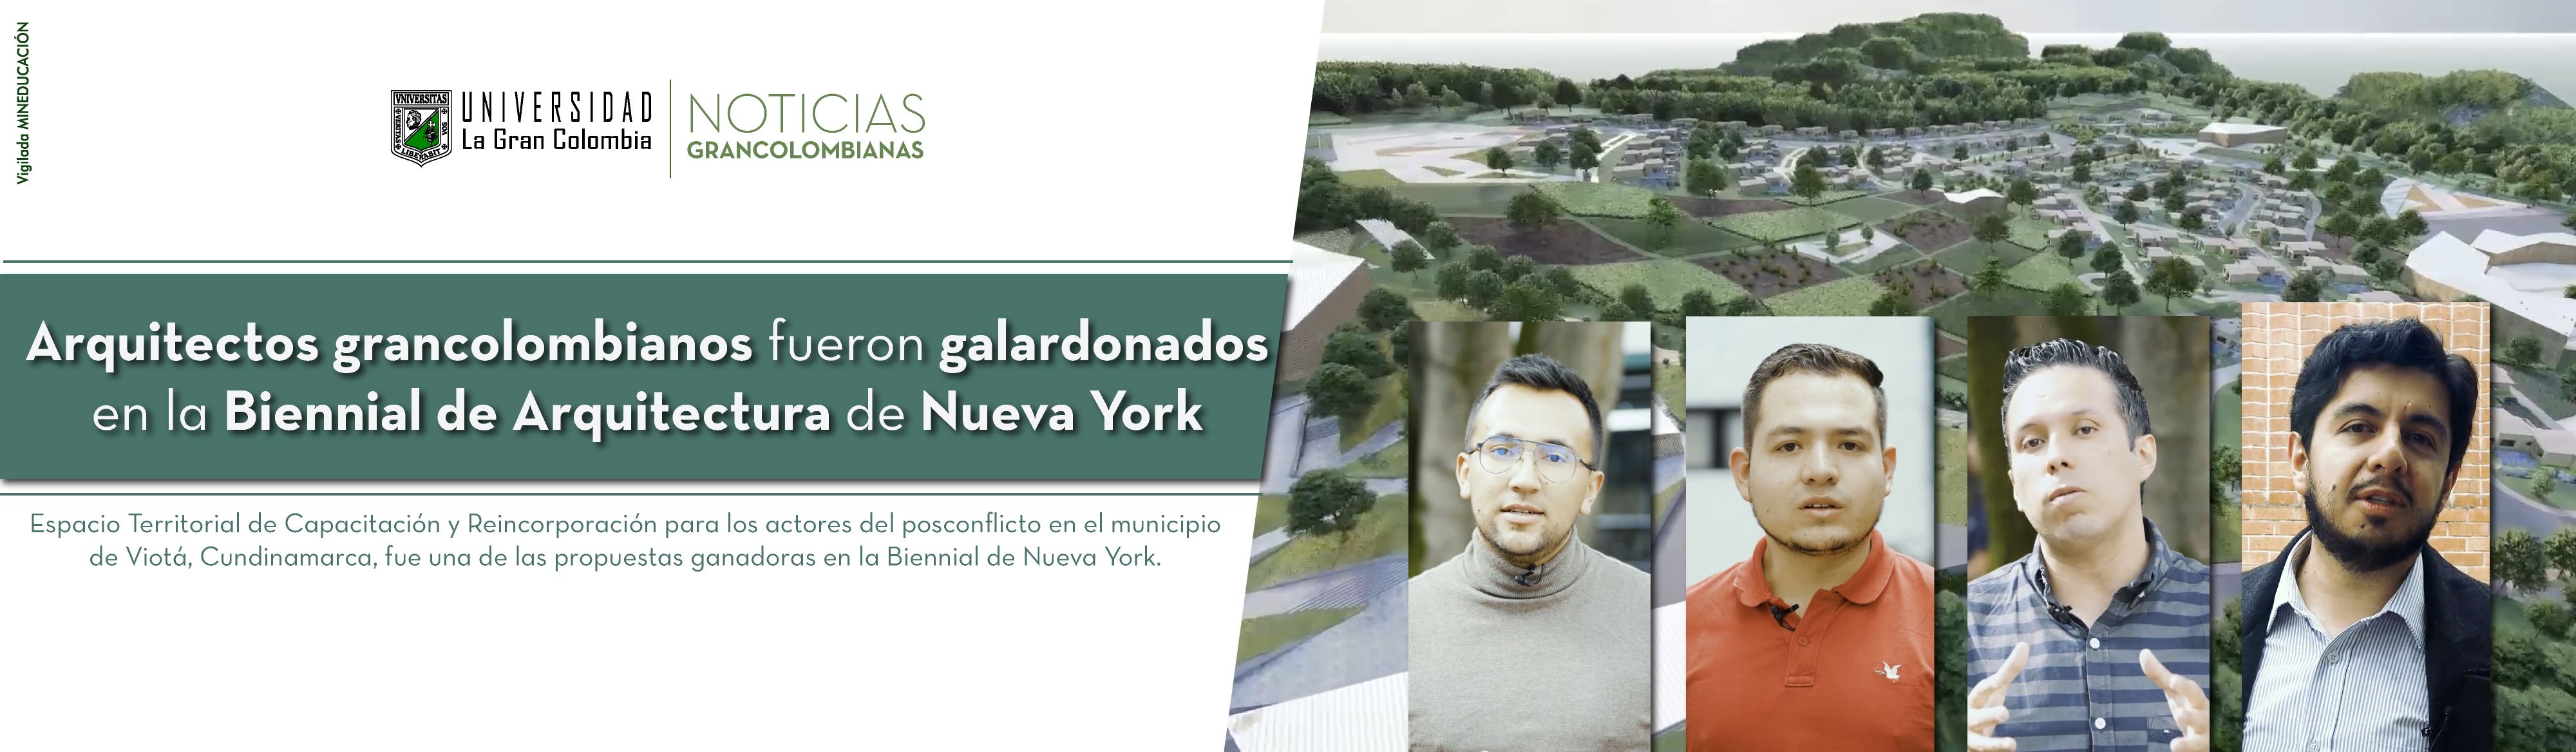 Arquitectos grancolombianos fueron galardonados en la Bienal de Arquitectura de Nueva York